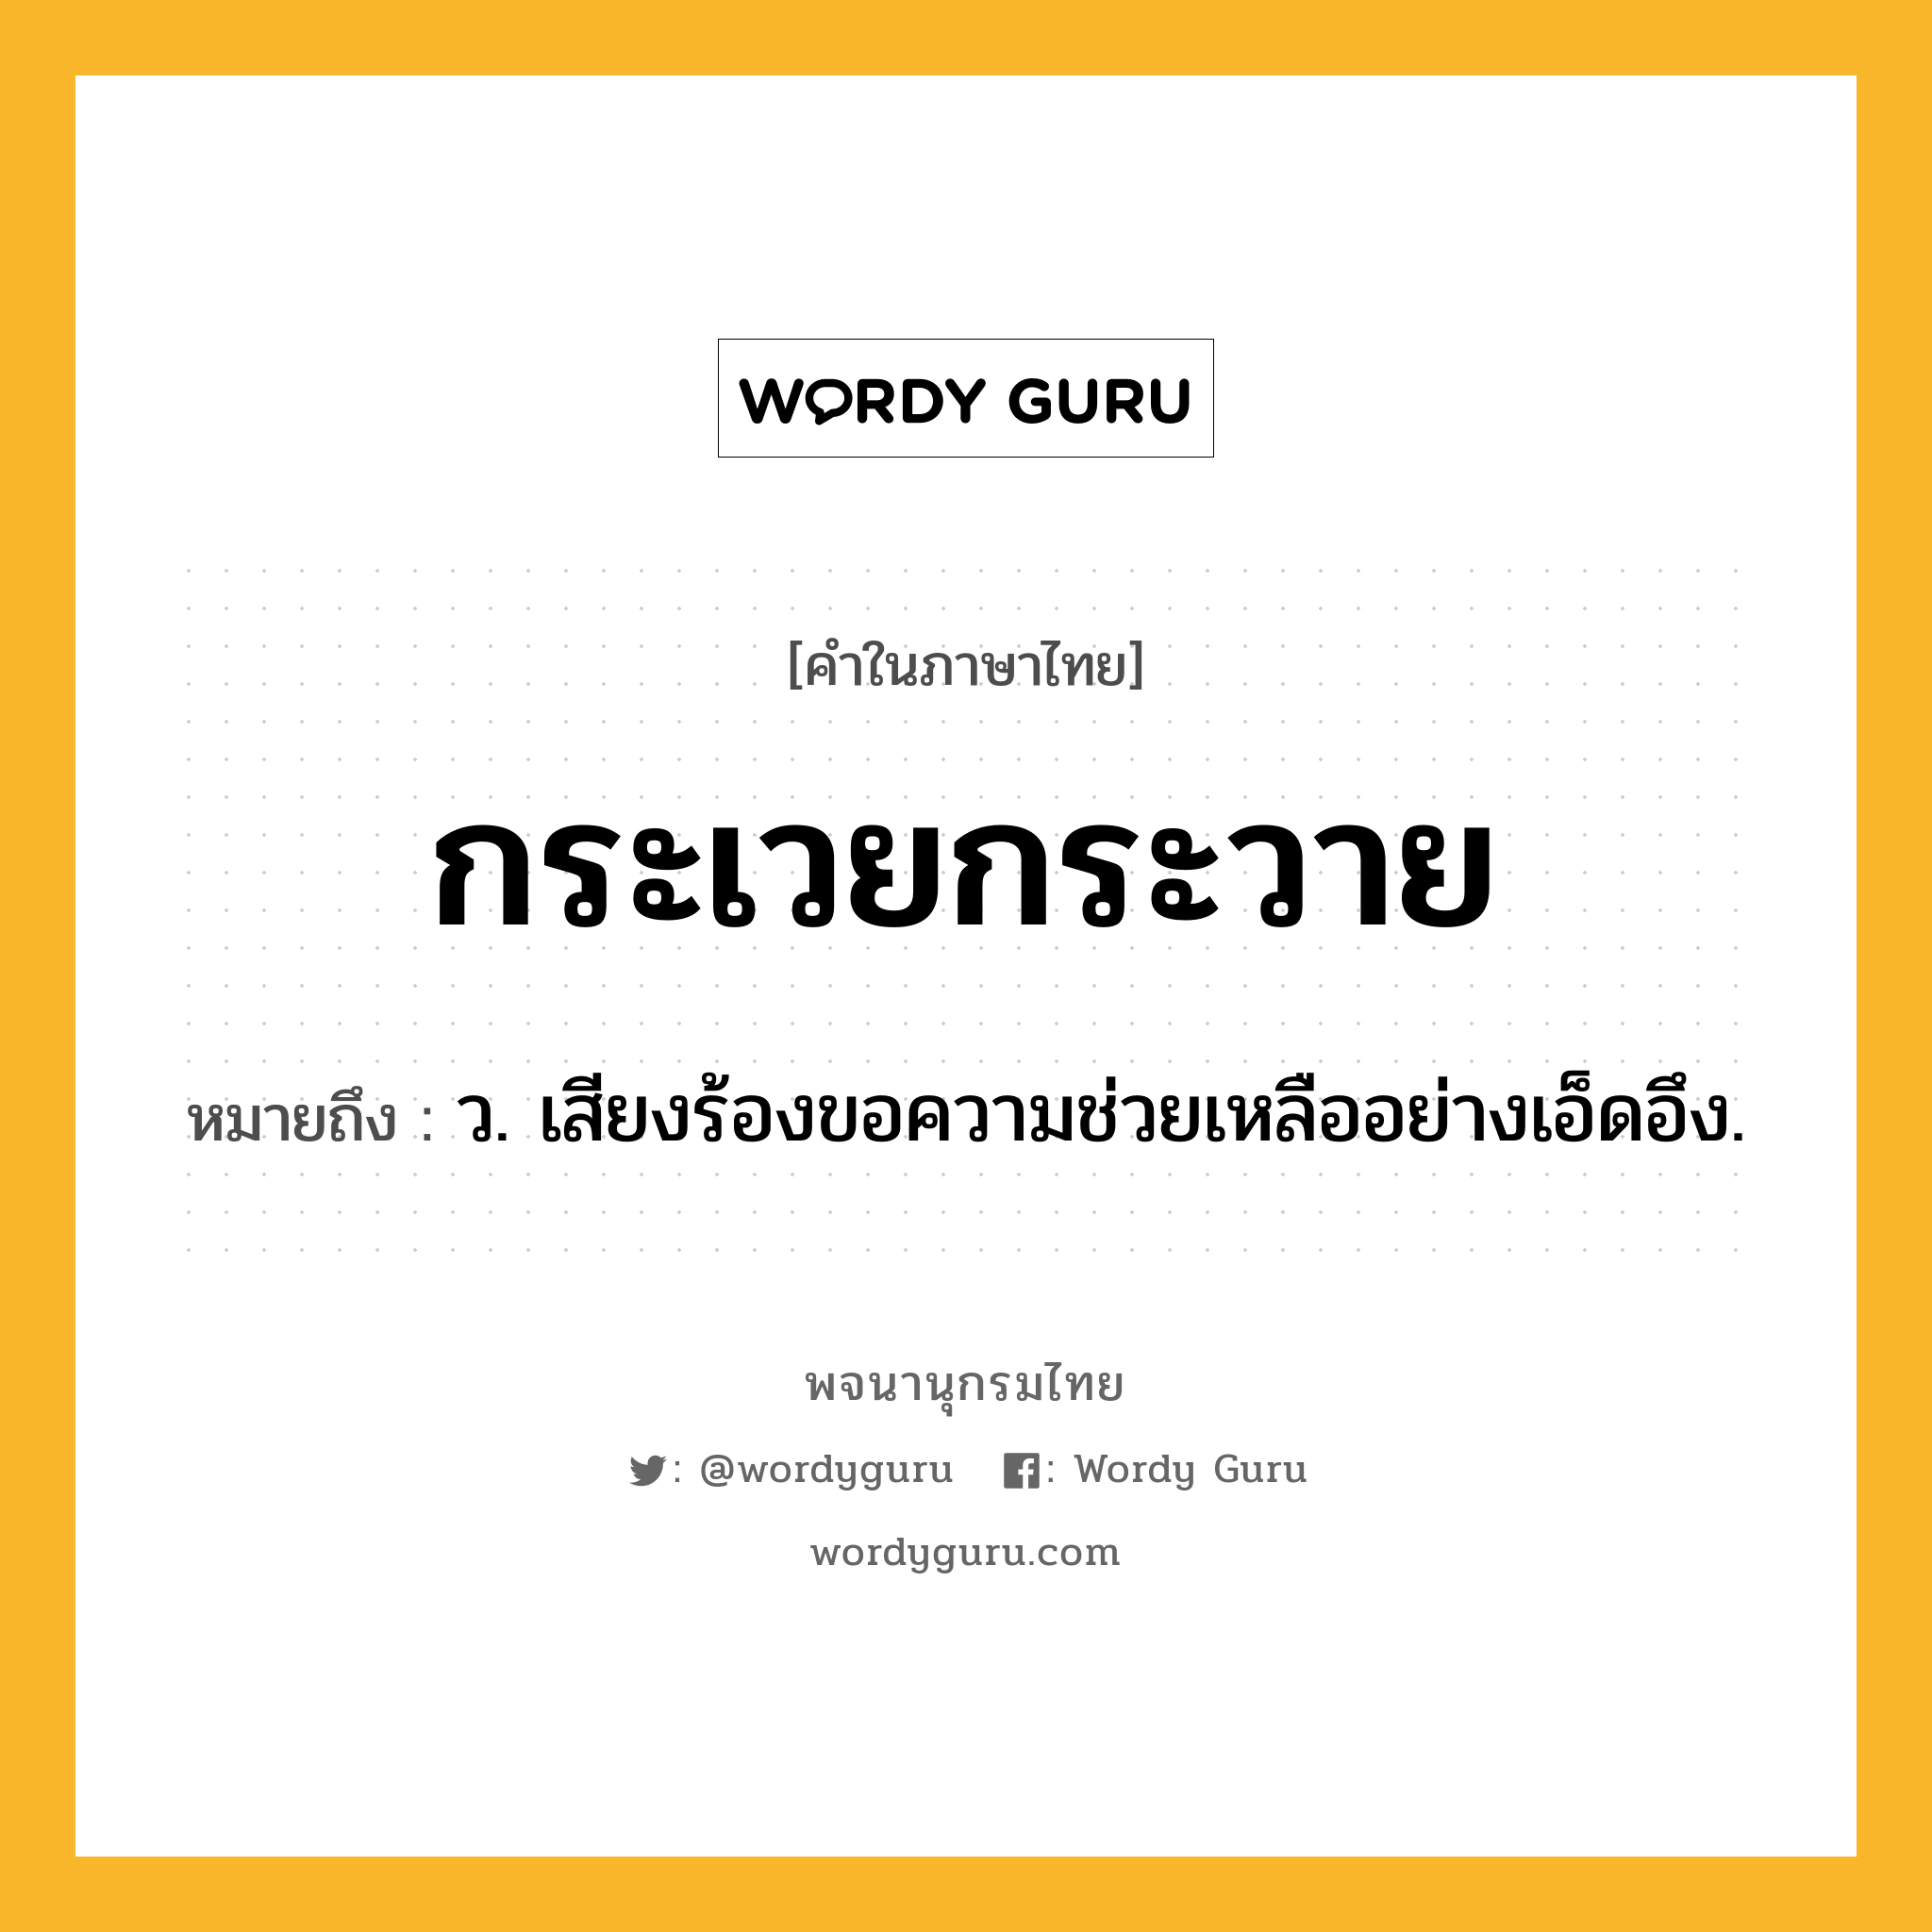 กระเวยกระวาย หมายถึงอะไร?, คำในภาษาไทย กระเวยกระวาย หมายถึง ว. เสียงร้องขอความช่วยเหลืออย่างเอ็ดอึง.